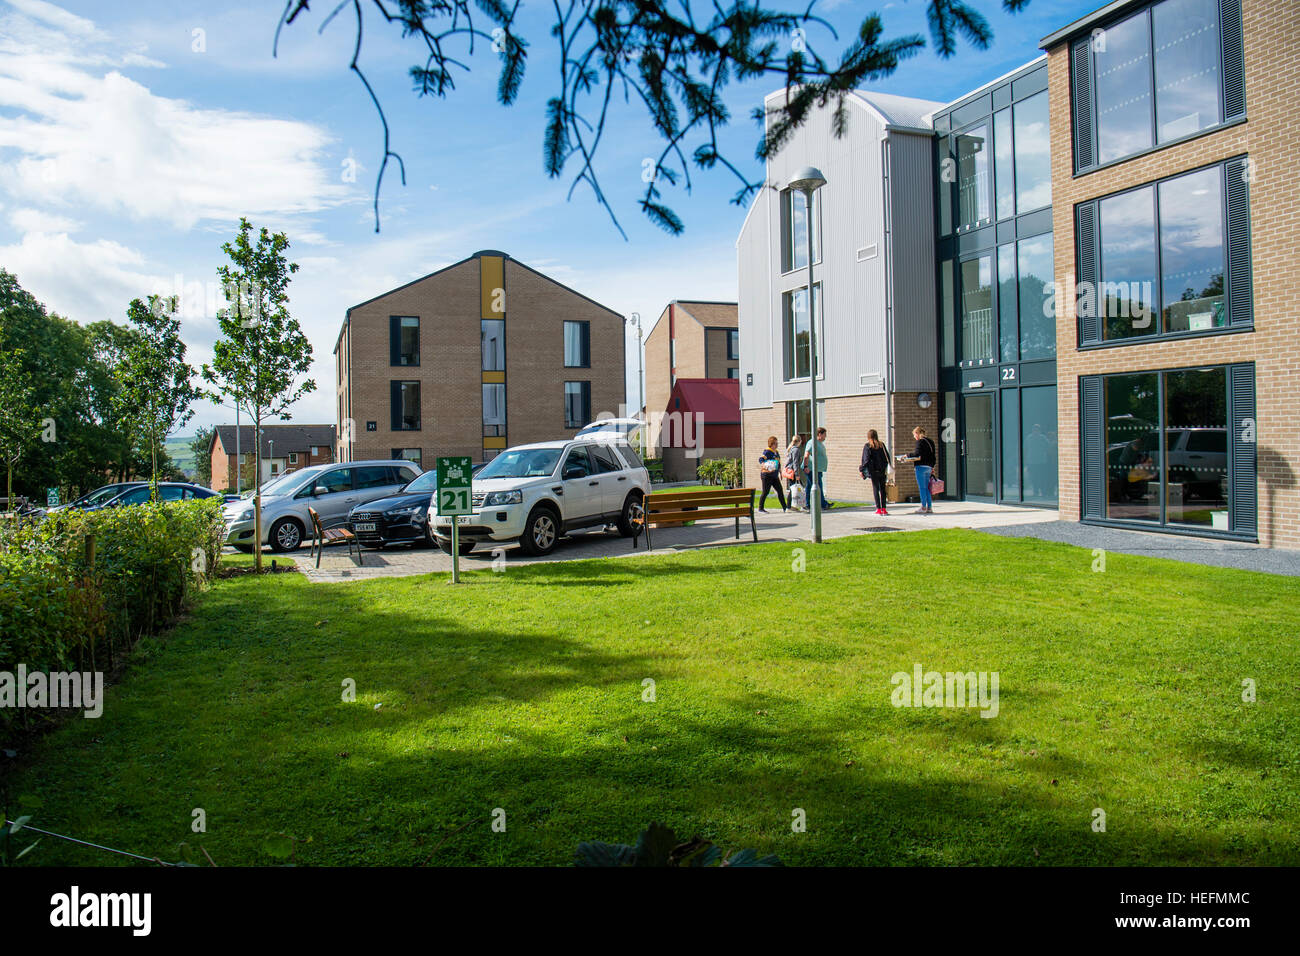 Universitätsausbildung in Großbritannien: Aberystwyth University Studenten mit Hilfe Fropm der Eltern, Umzug in Fferm Penglais Selbstversorger-Wohnheim zu Beginn des Schuljahres 2016 / 17 Stockfoto